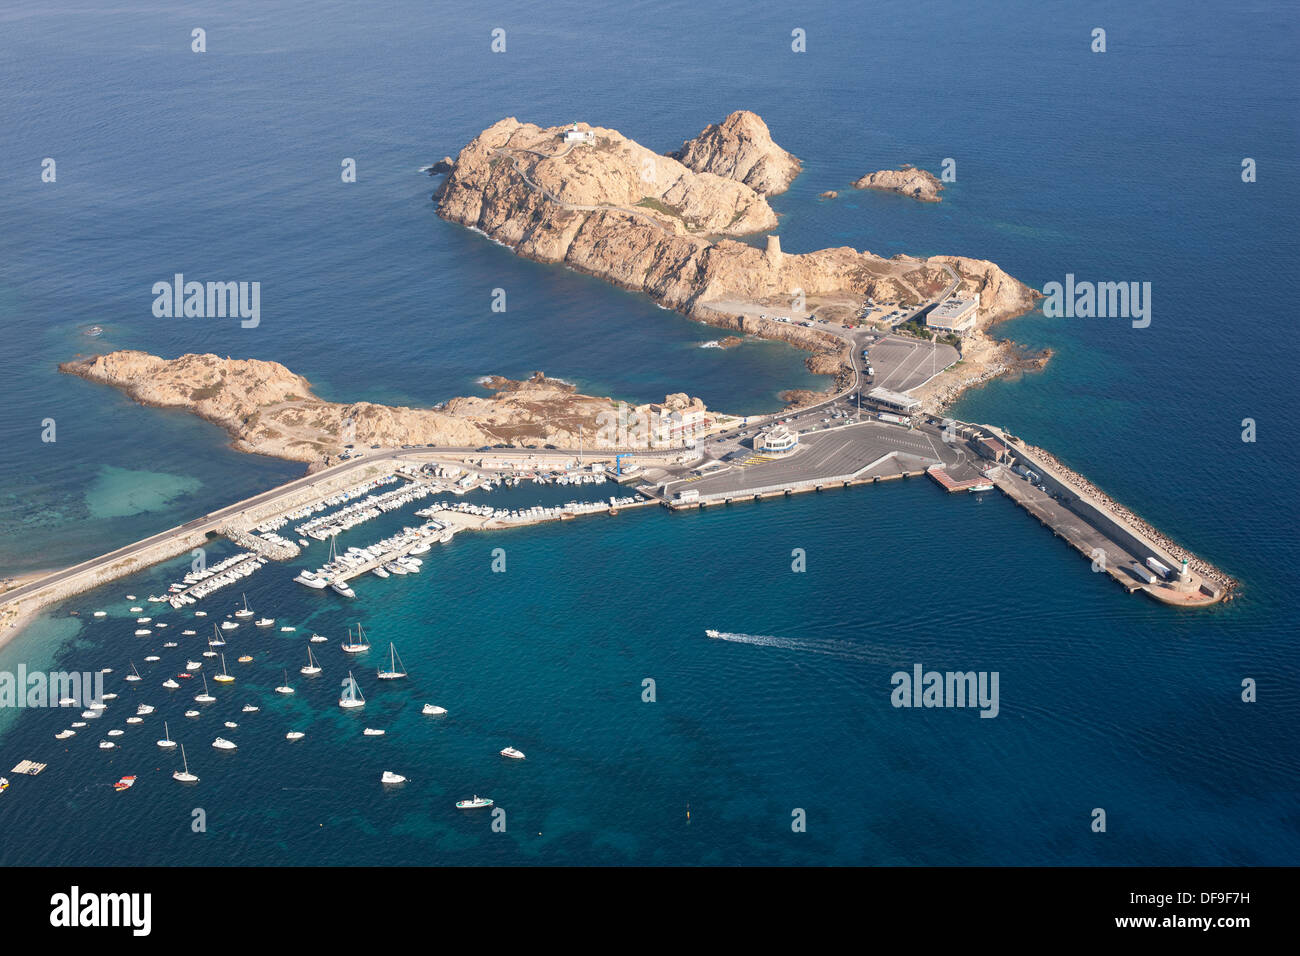 VISTA AEREA. Isola di pietra con il suo terminal dei traghetti e la strada che conduce al centro storico di l'Île Rousse. Haute-Corse, Corsica, Francia. Foto Stock